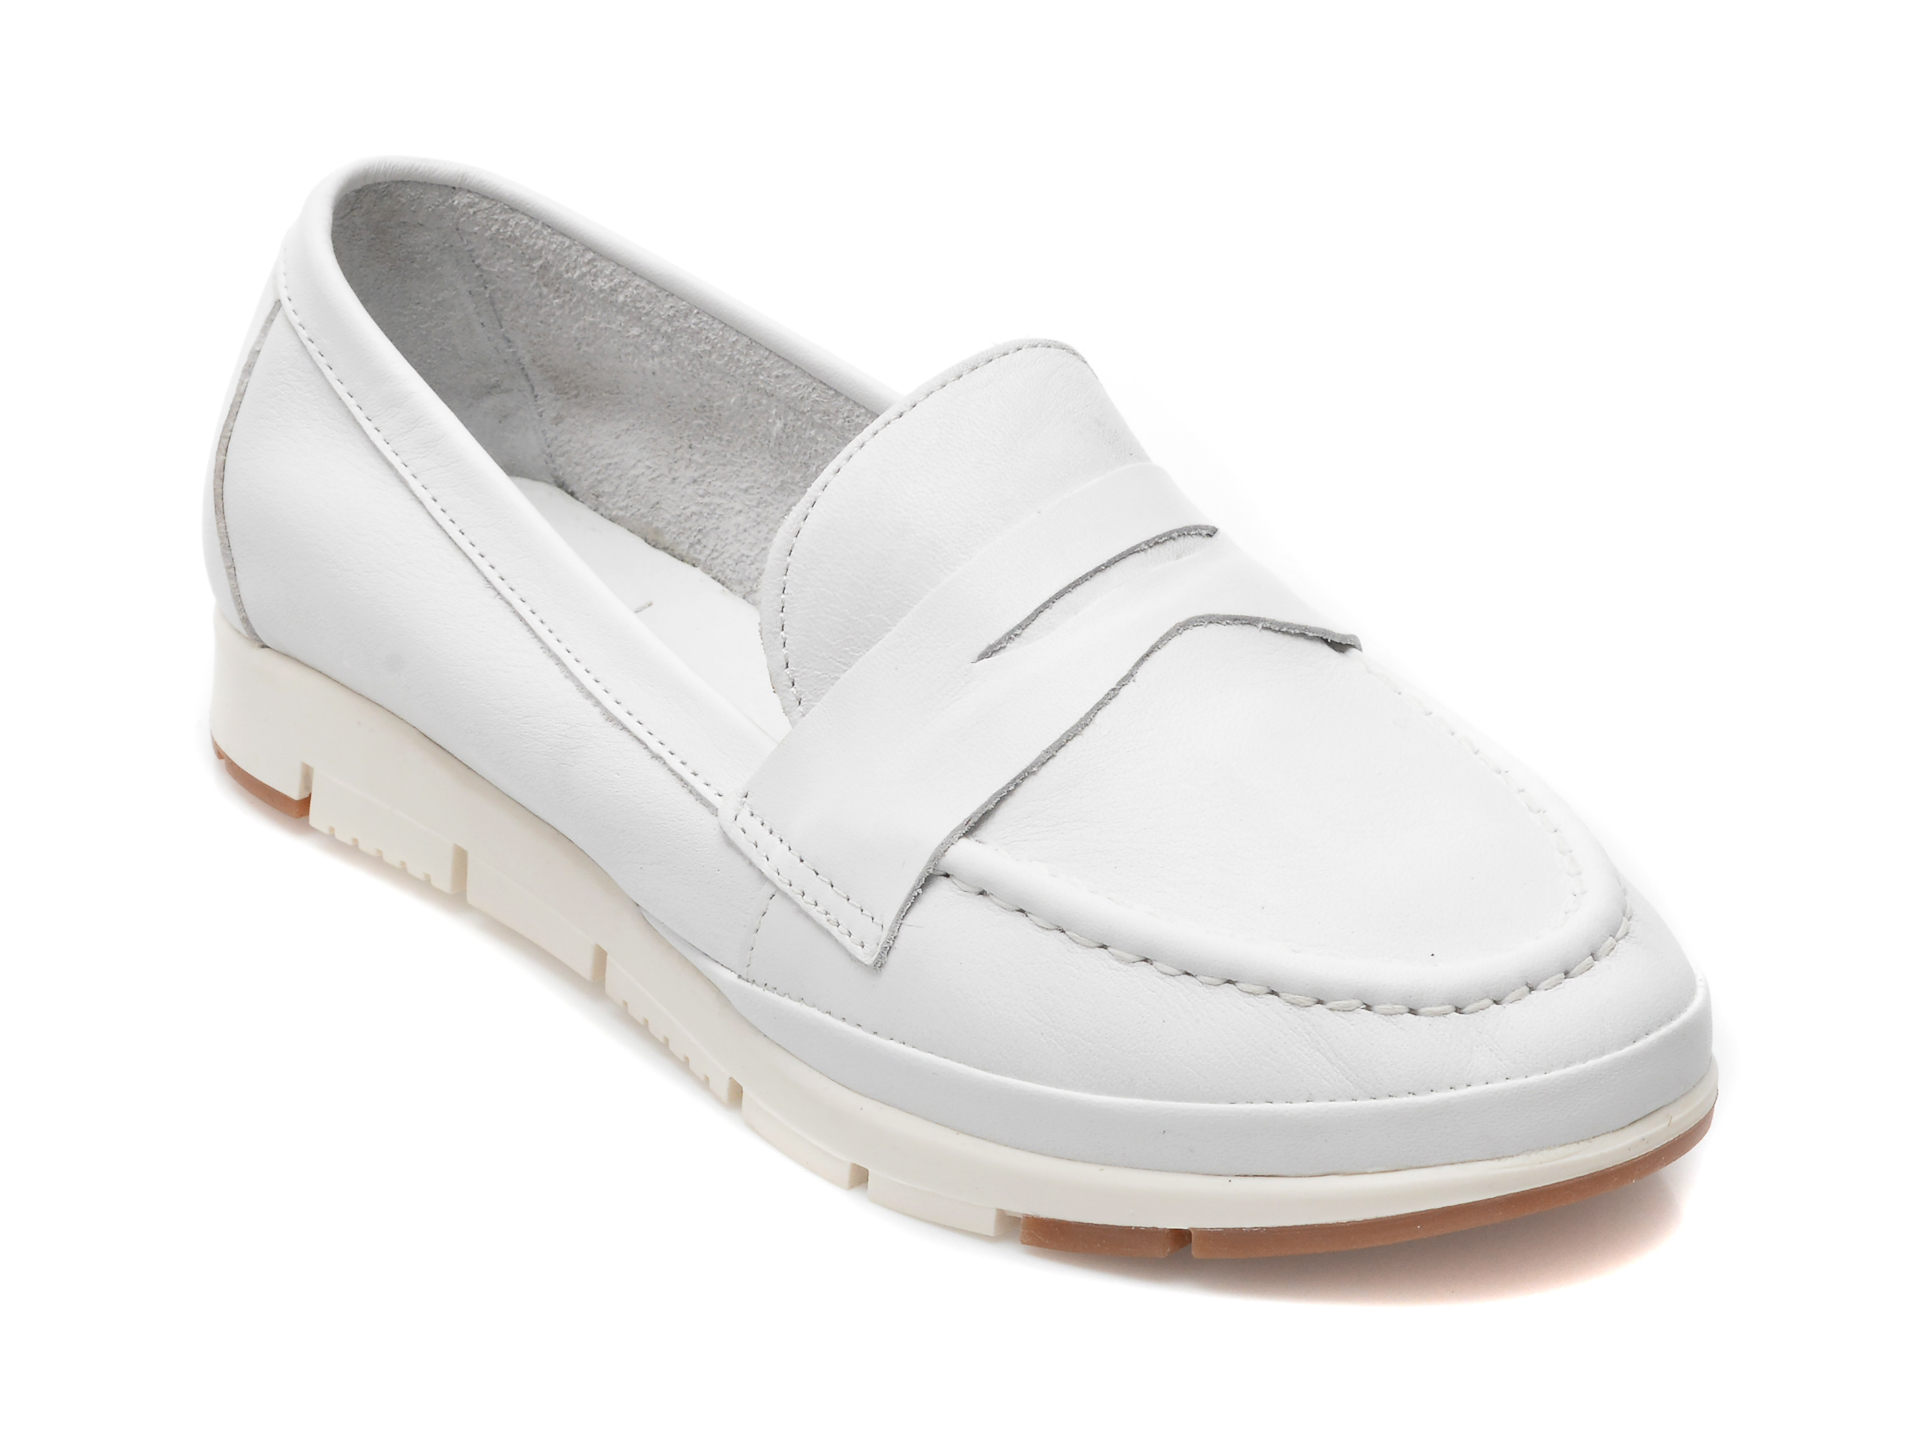 Pantofi THOMAS MUNZ albi, 11462029, din piele naturala otter.ro